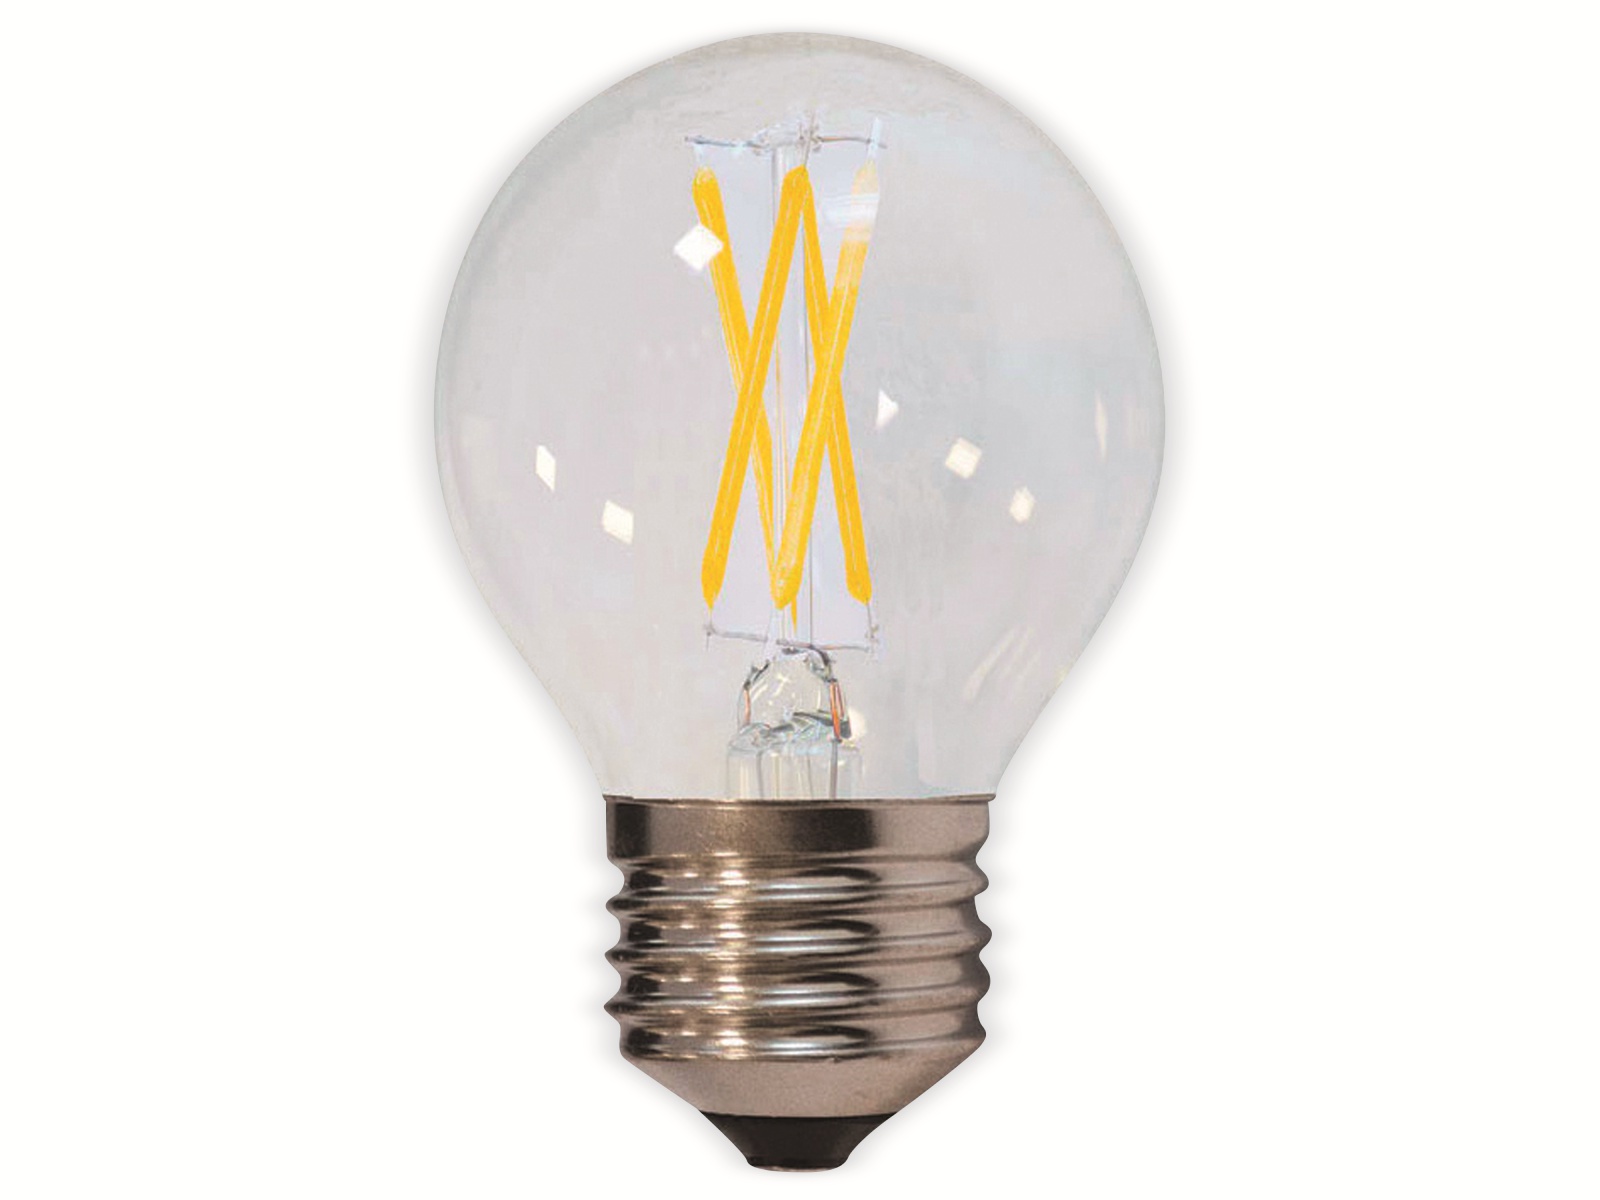 OPTONICA LED-Lampe 1868 Fil, E27, G45, EEK F, 4W, 400lm, 4500K